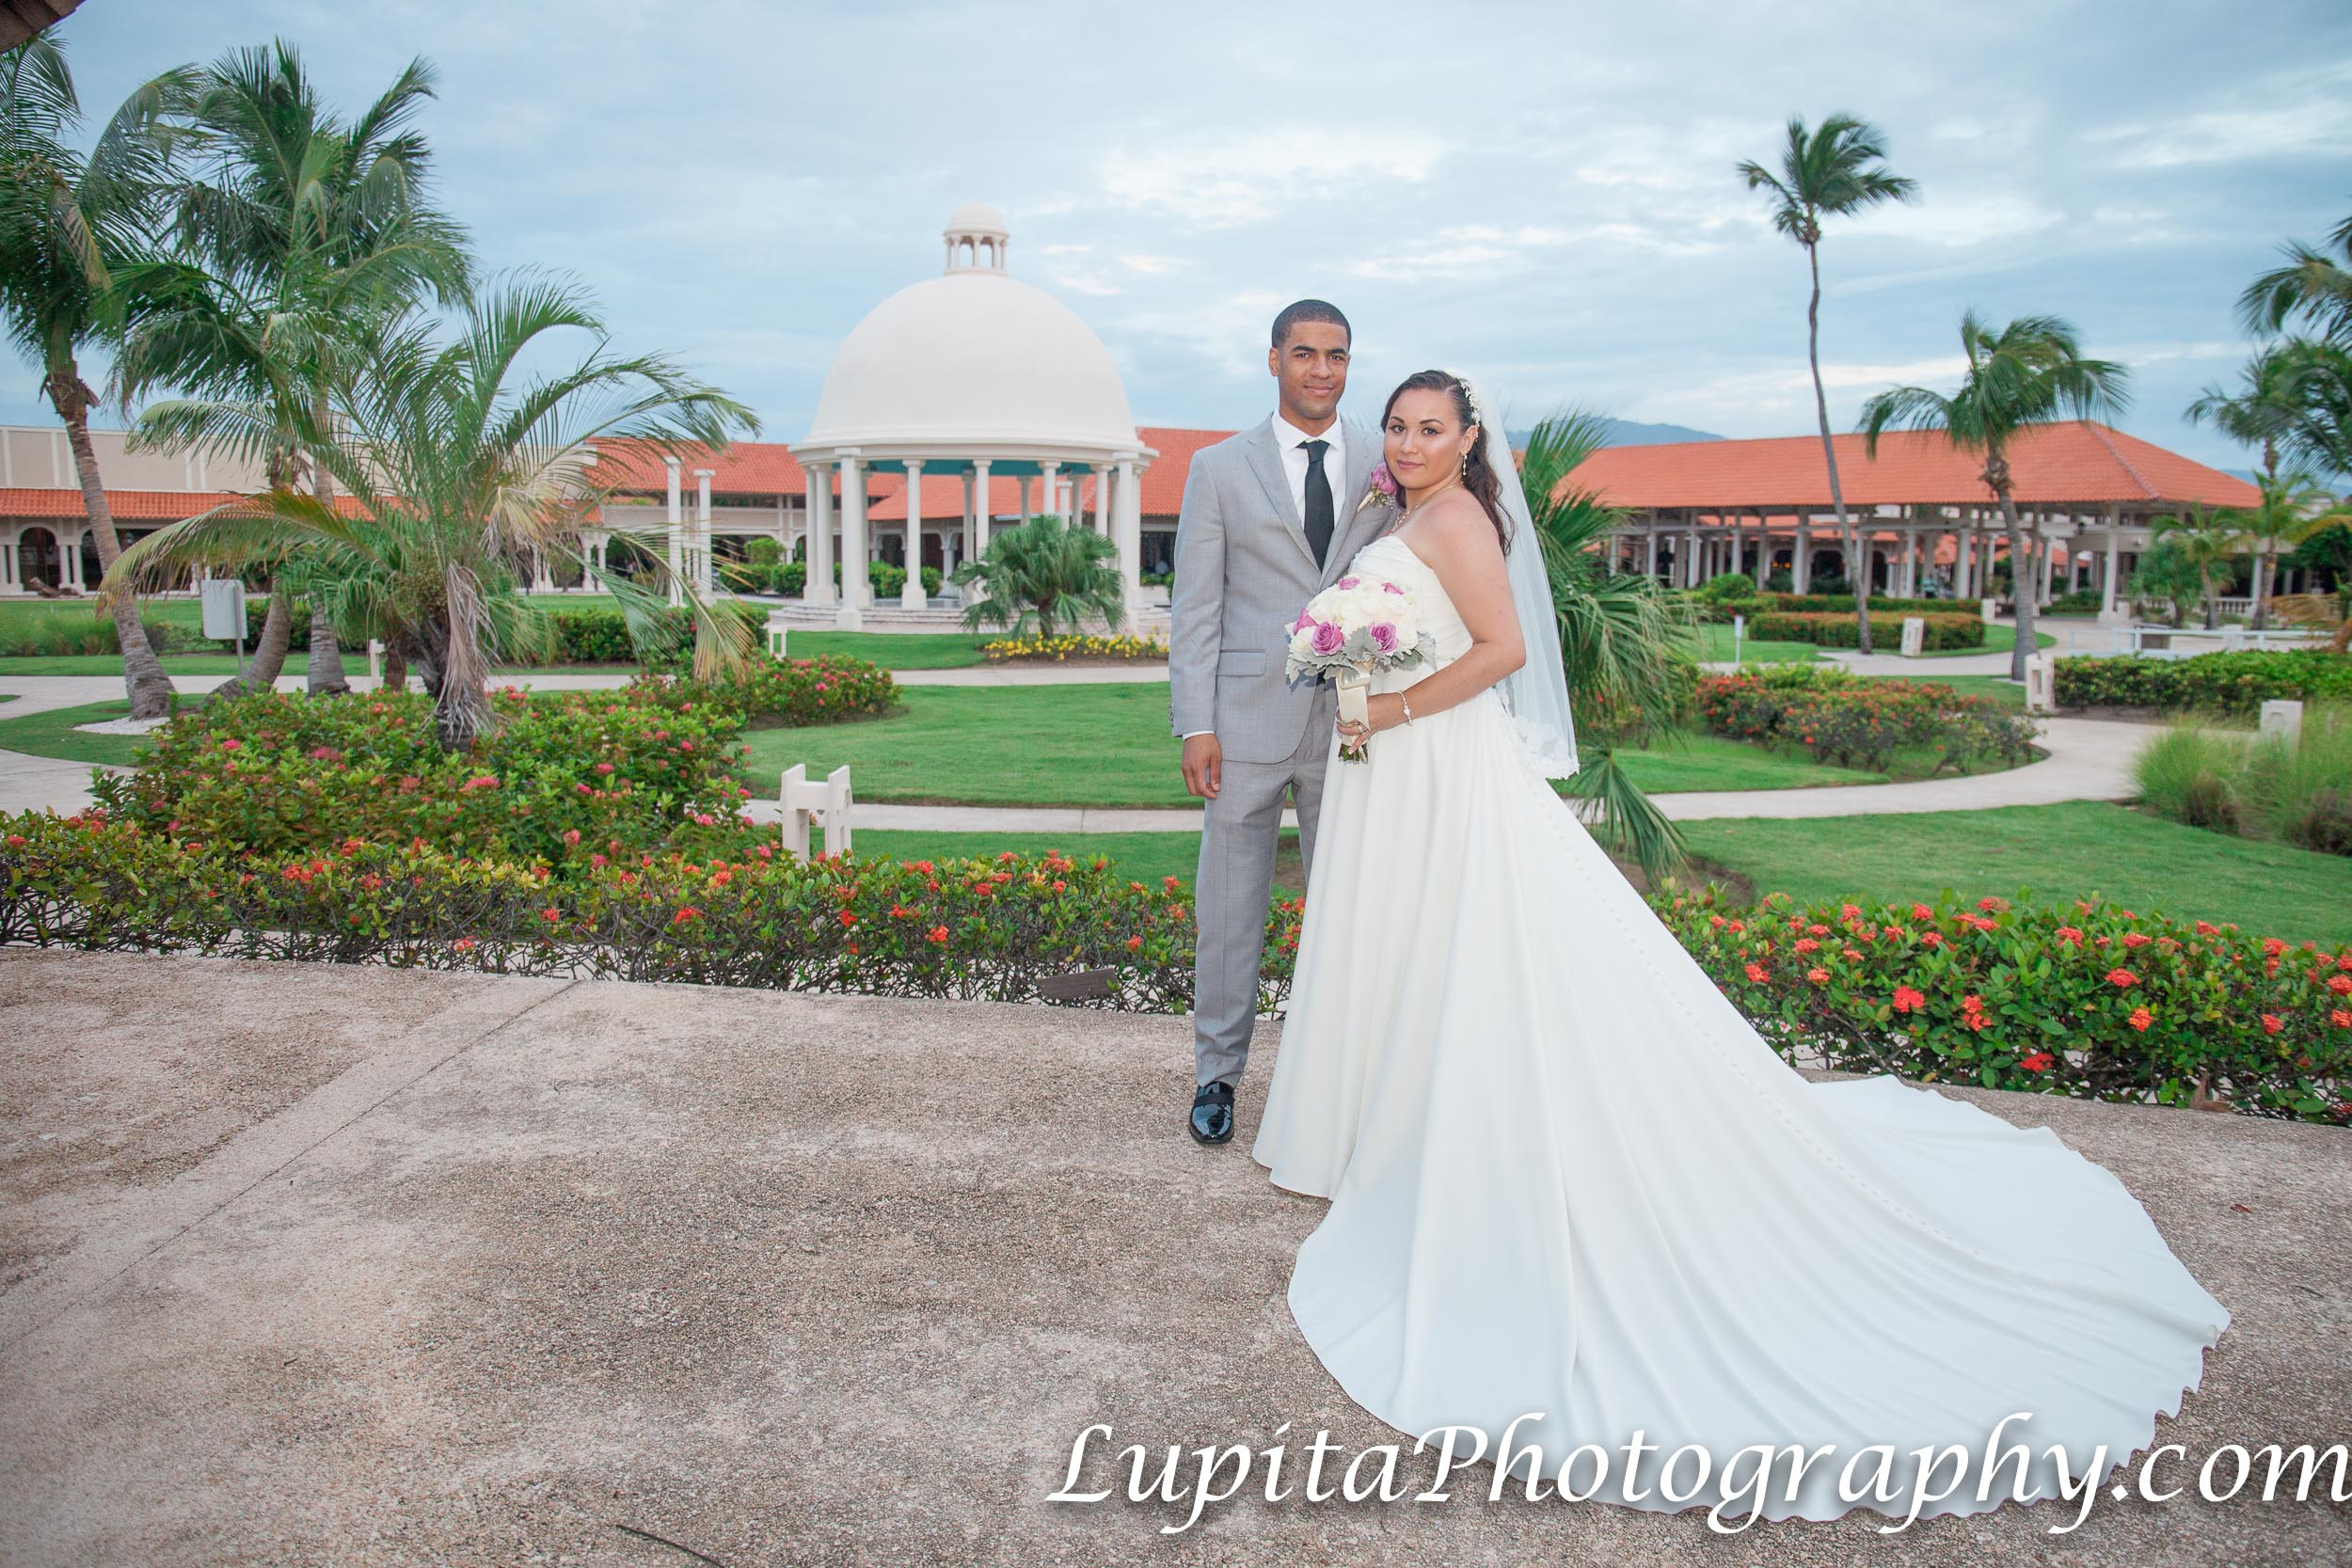 Meliá Coco Beach Resort. Rio Grande. Puerto Rico. The newly-wed couple celebrating their special day. La pareja de recién casados celebrando su día especial.